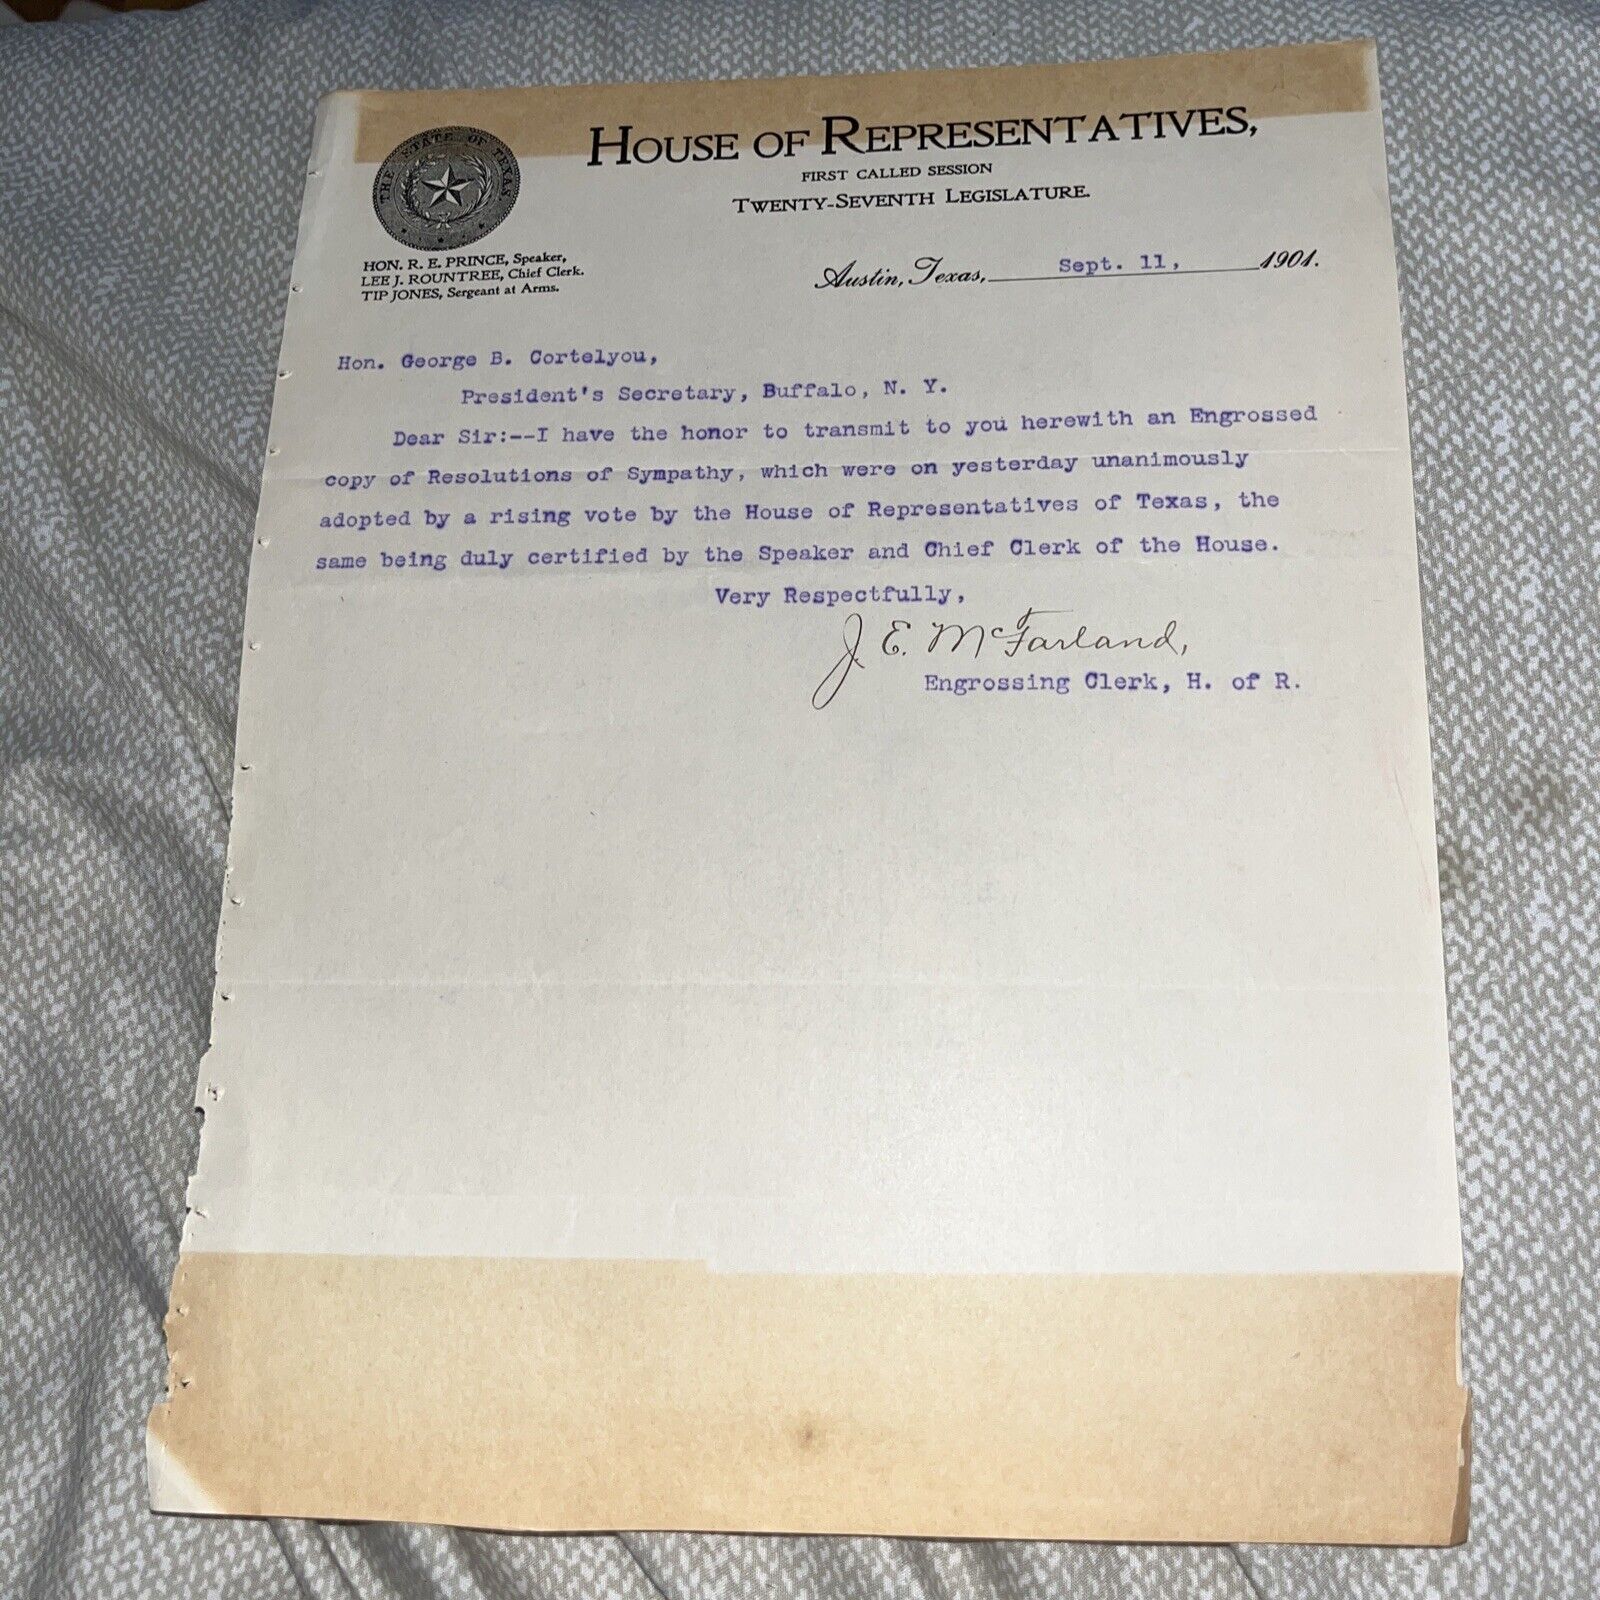 1901 House of Representatives Cover Letter on President McKinley Assassination